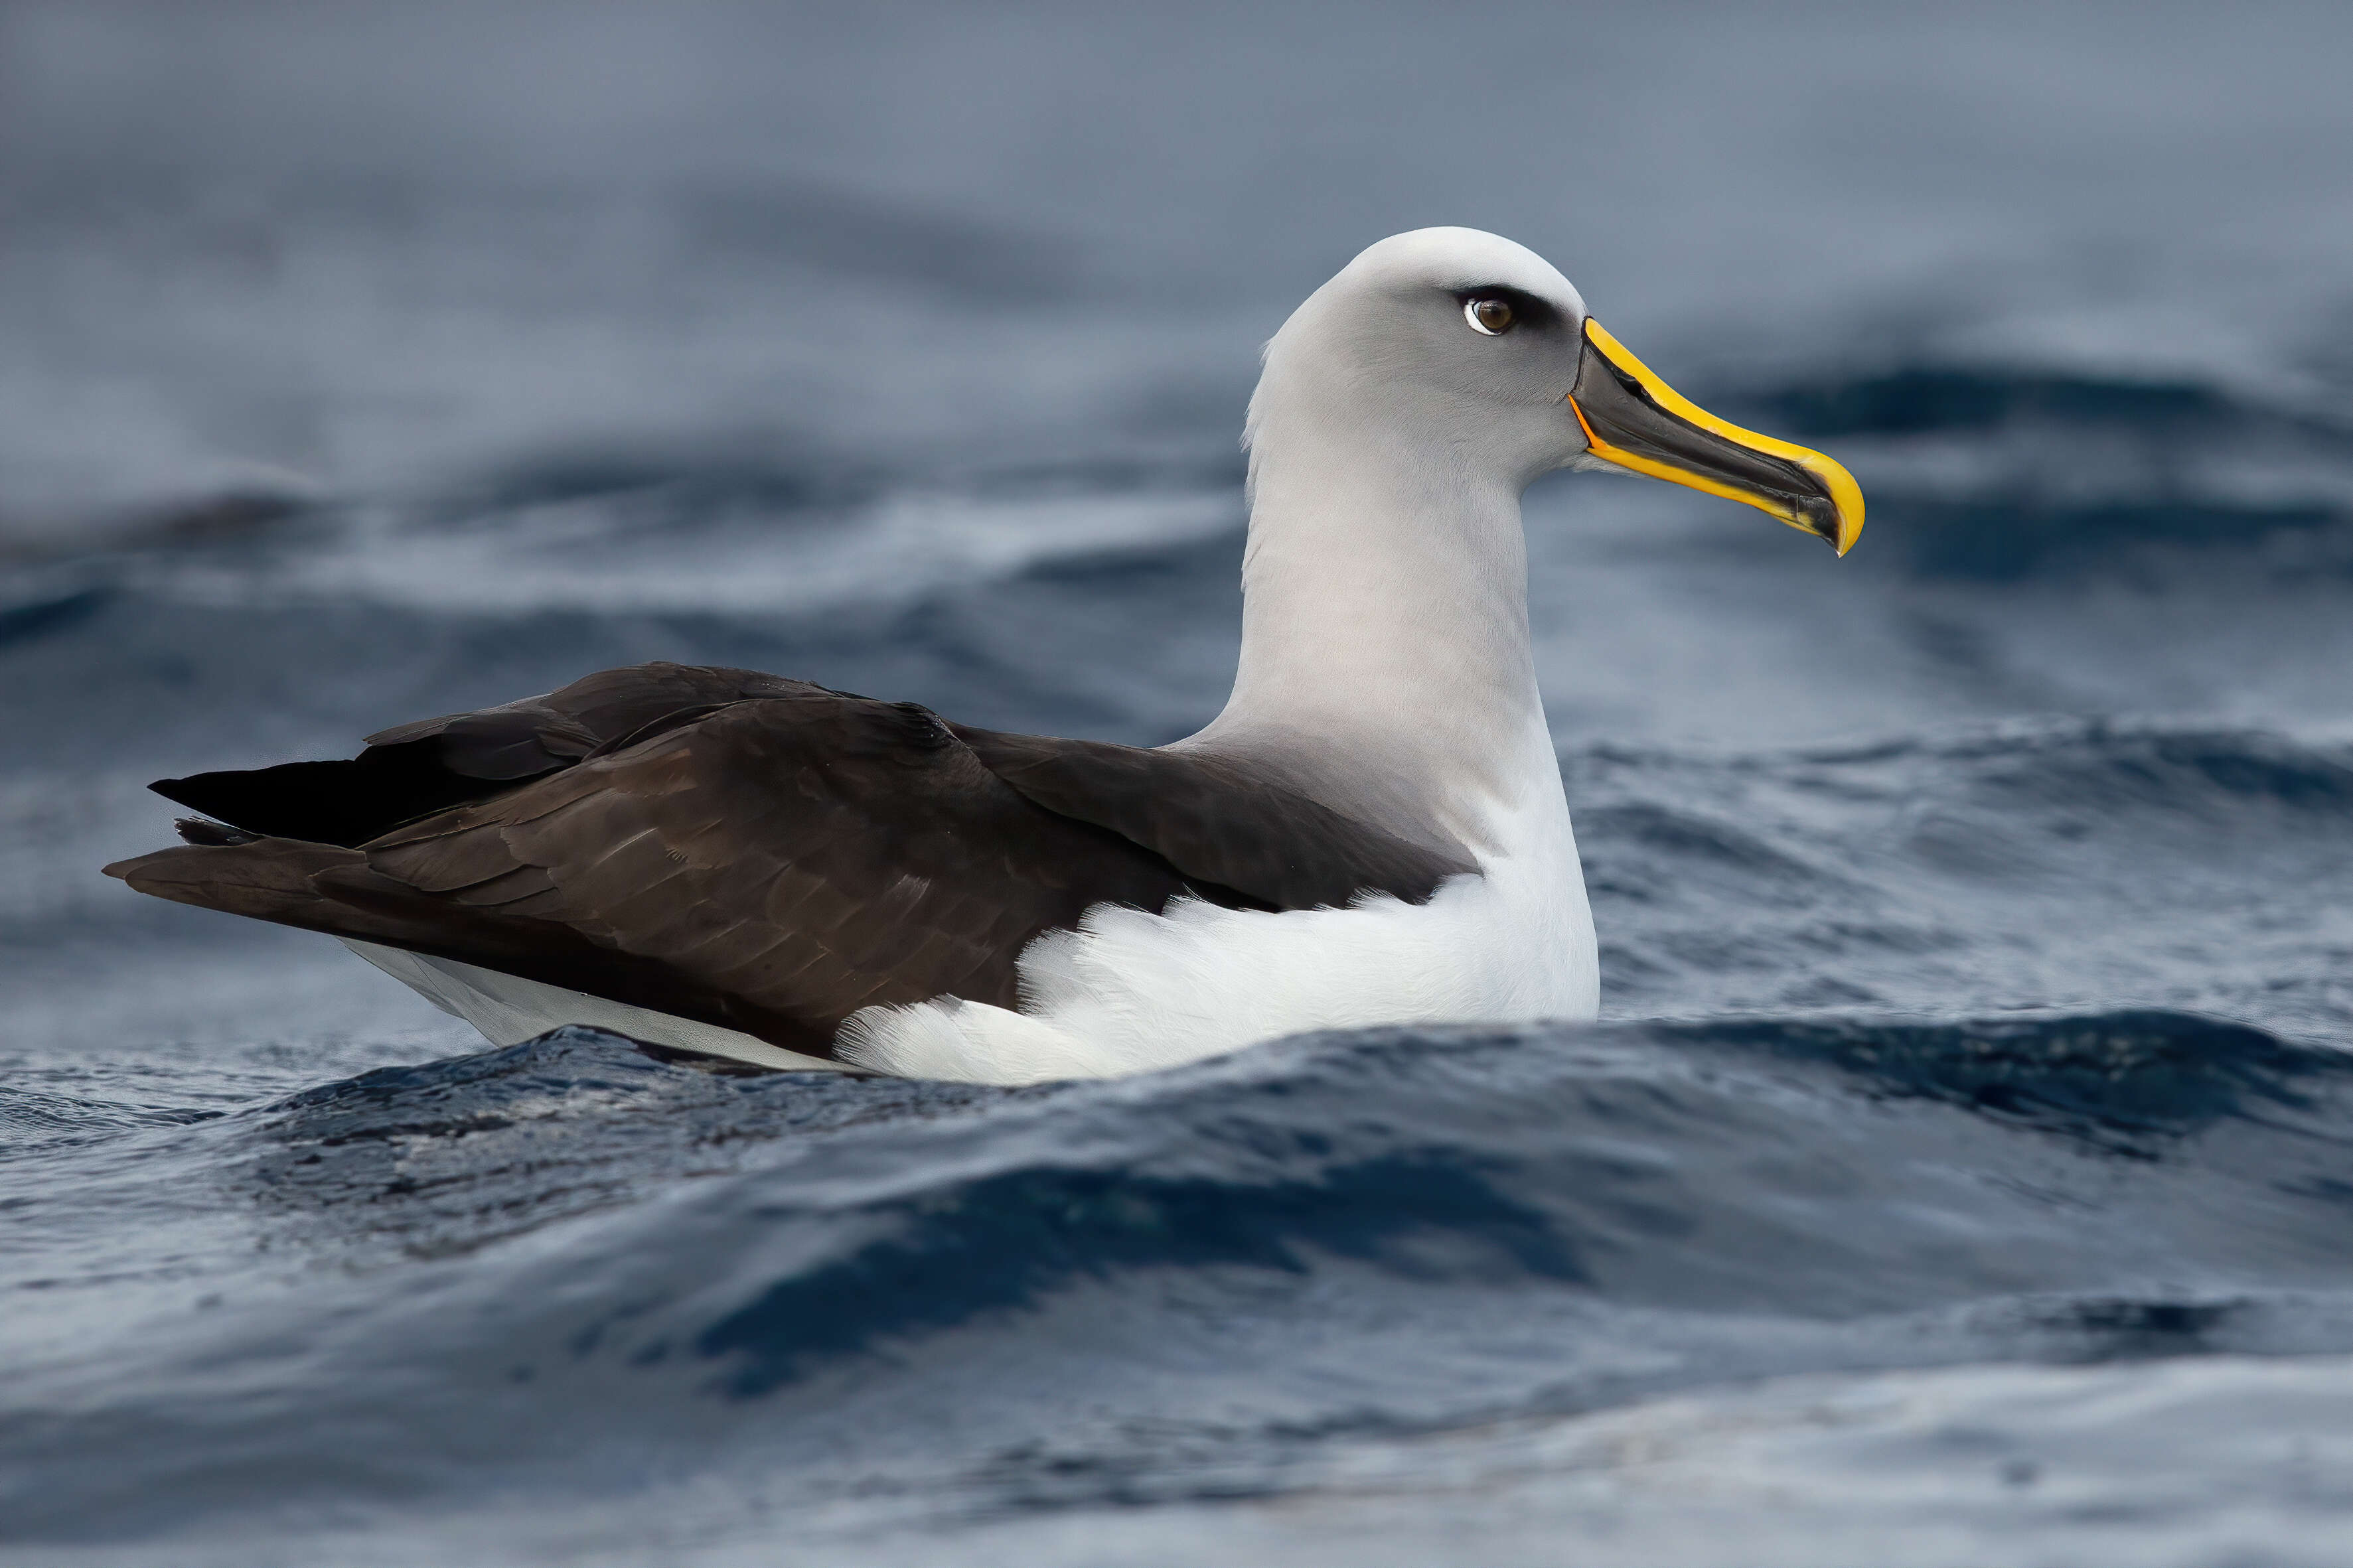 Image of Buller's Albatross